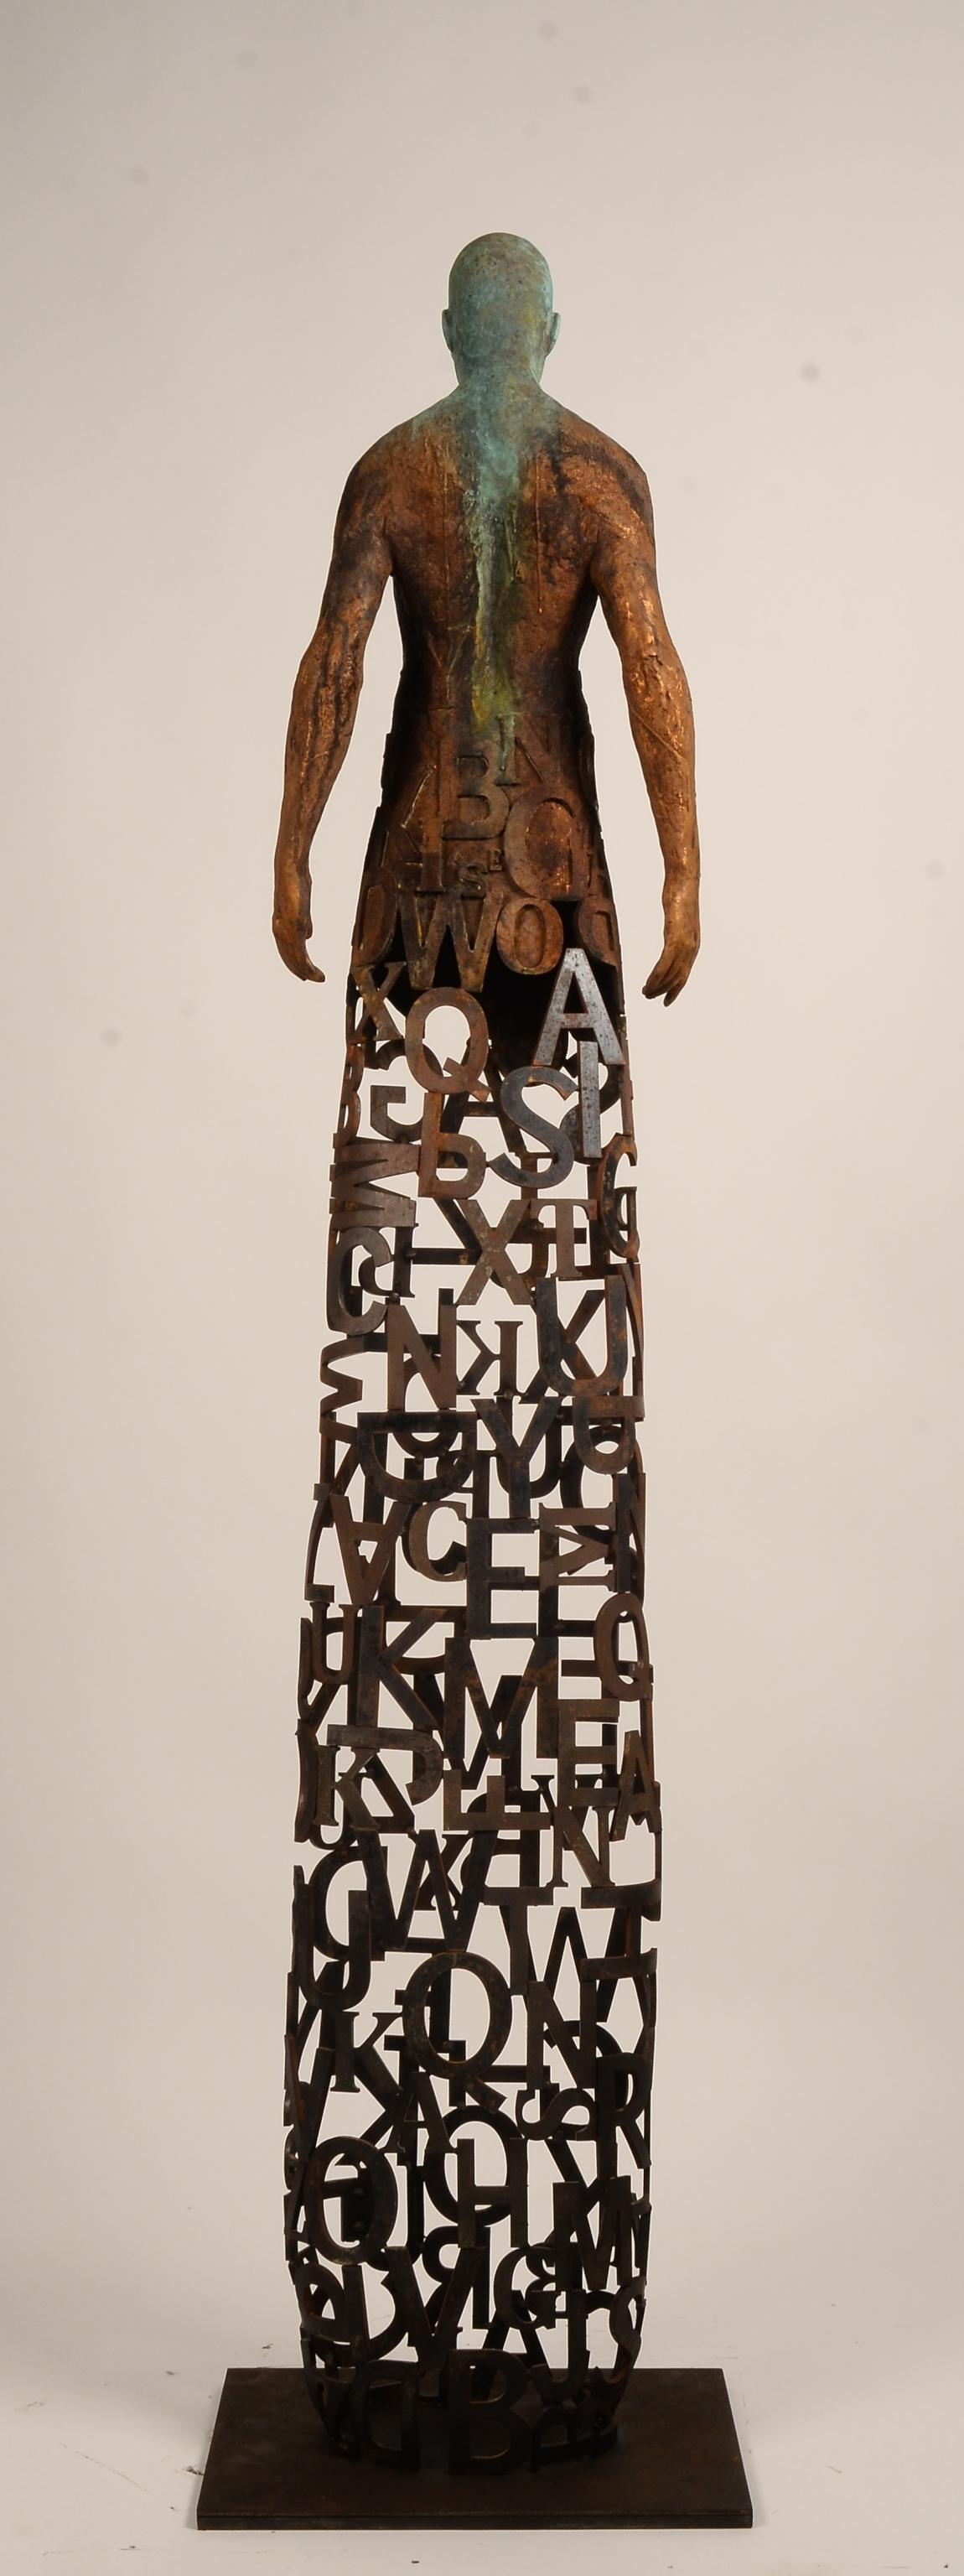 Nuntius – Skulptur aus Bronze und Stahl mit Figur und durchsichtigem „Wörter“-Garment (Gold), Figurative Sculpture, von Jesus Curia Perez